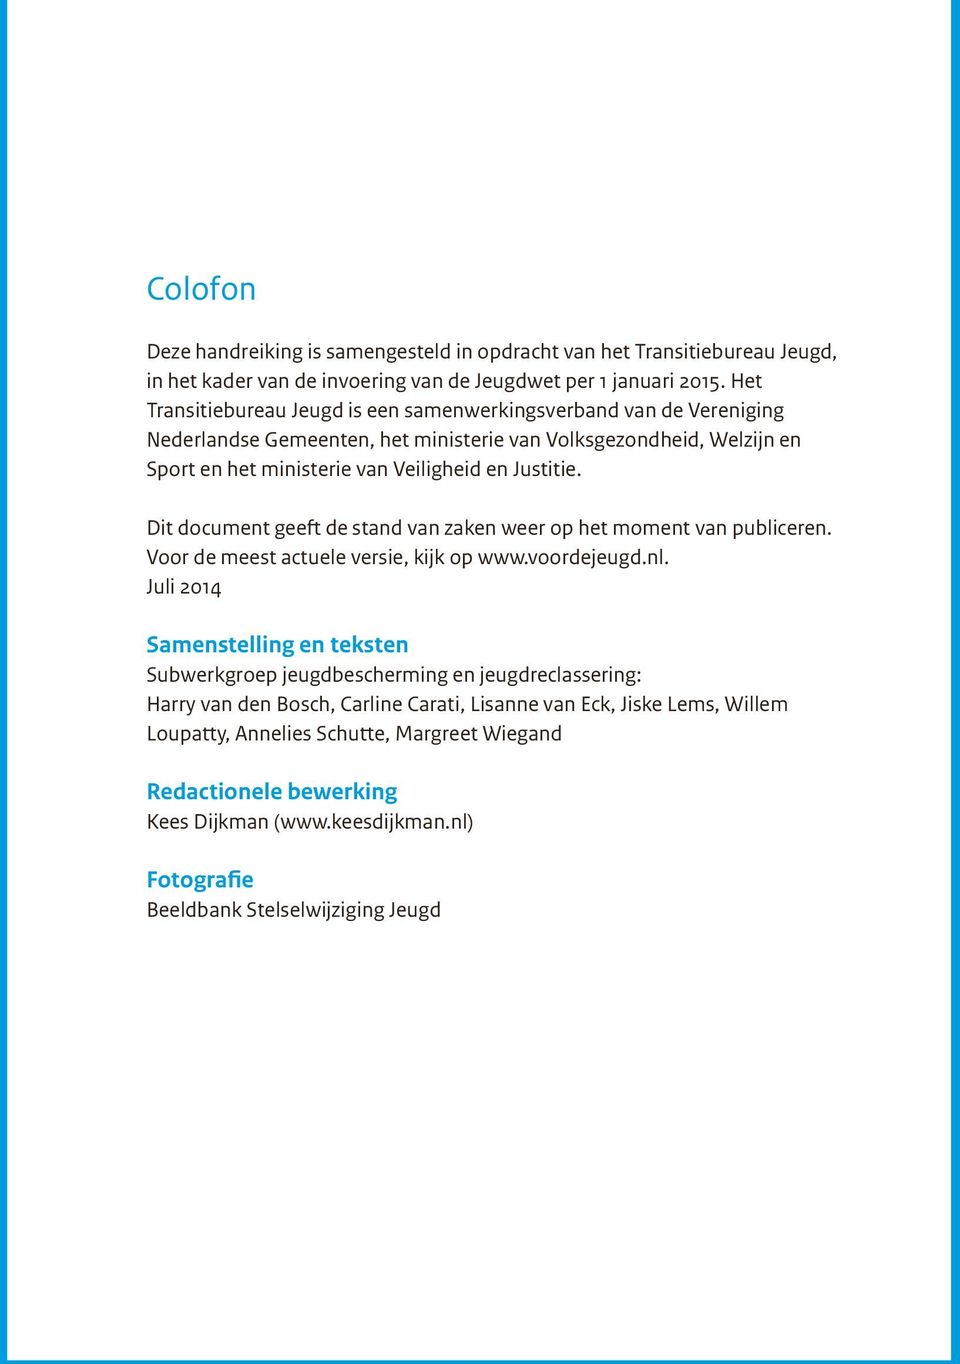 Dit document geeft de stand van zaken weer op het moment van publiceren. Voor de meest actuele versie, kijk op www.voordejeugd.nl.